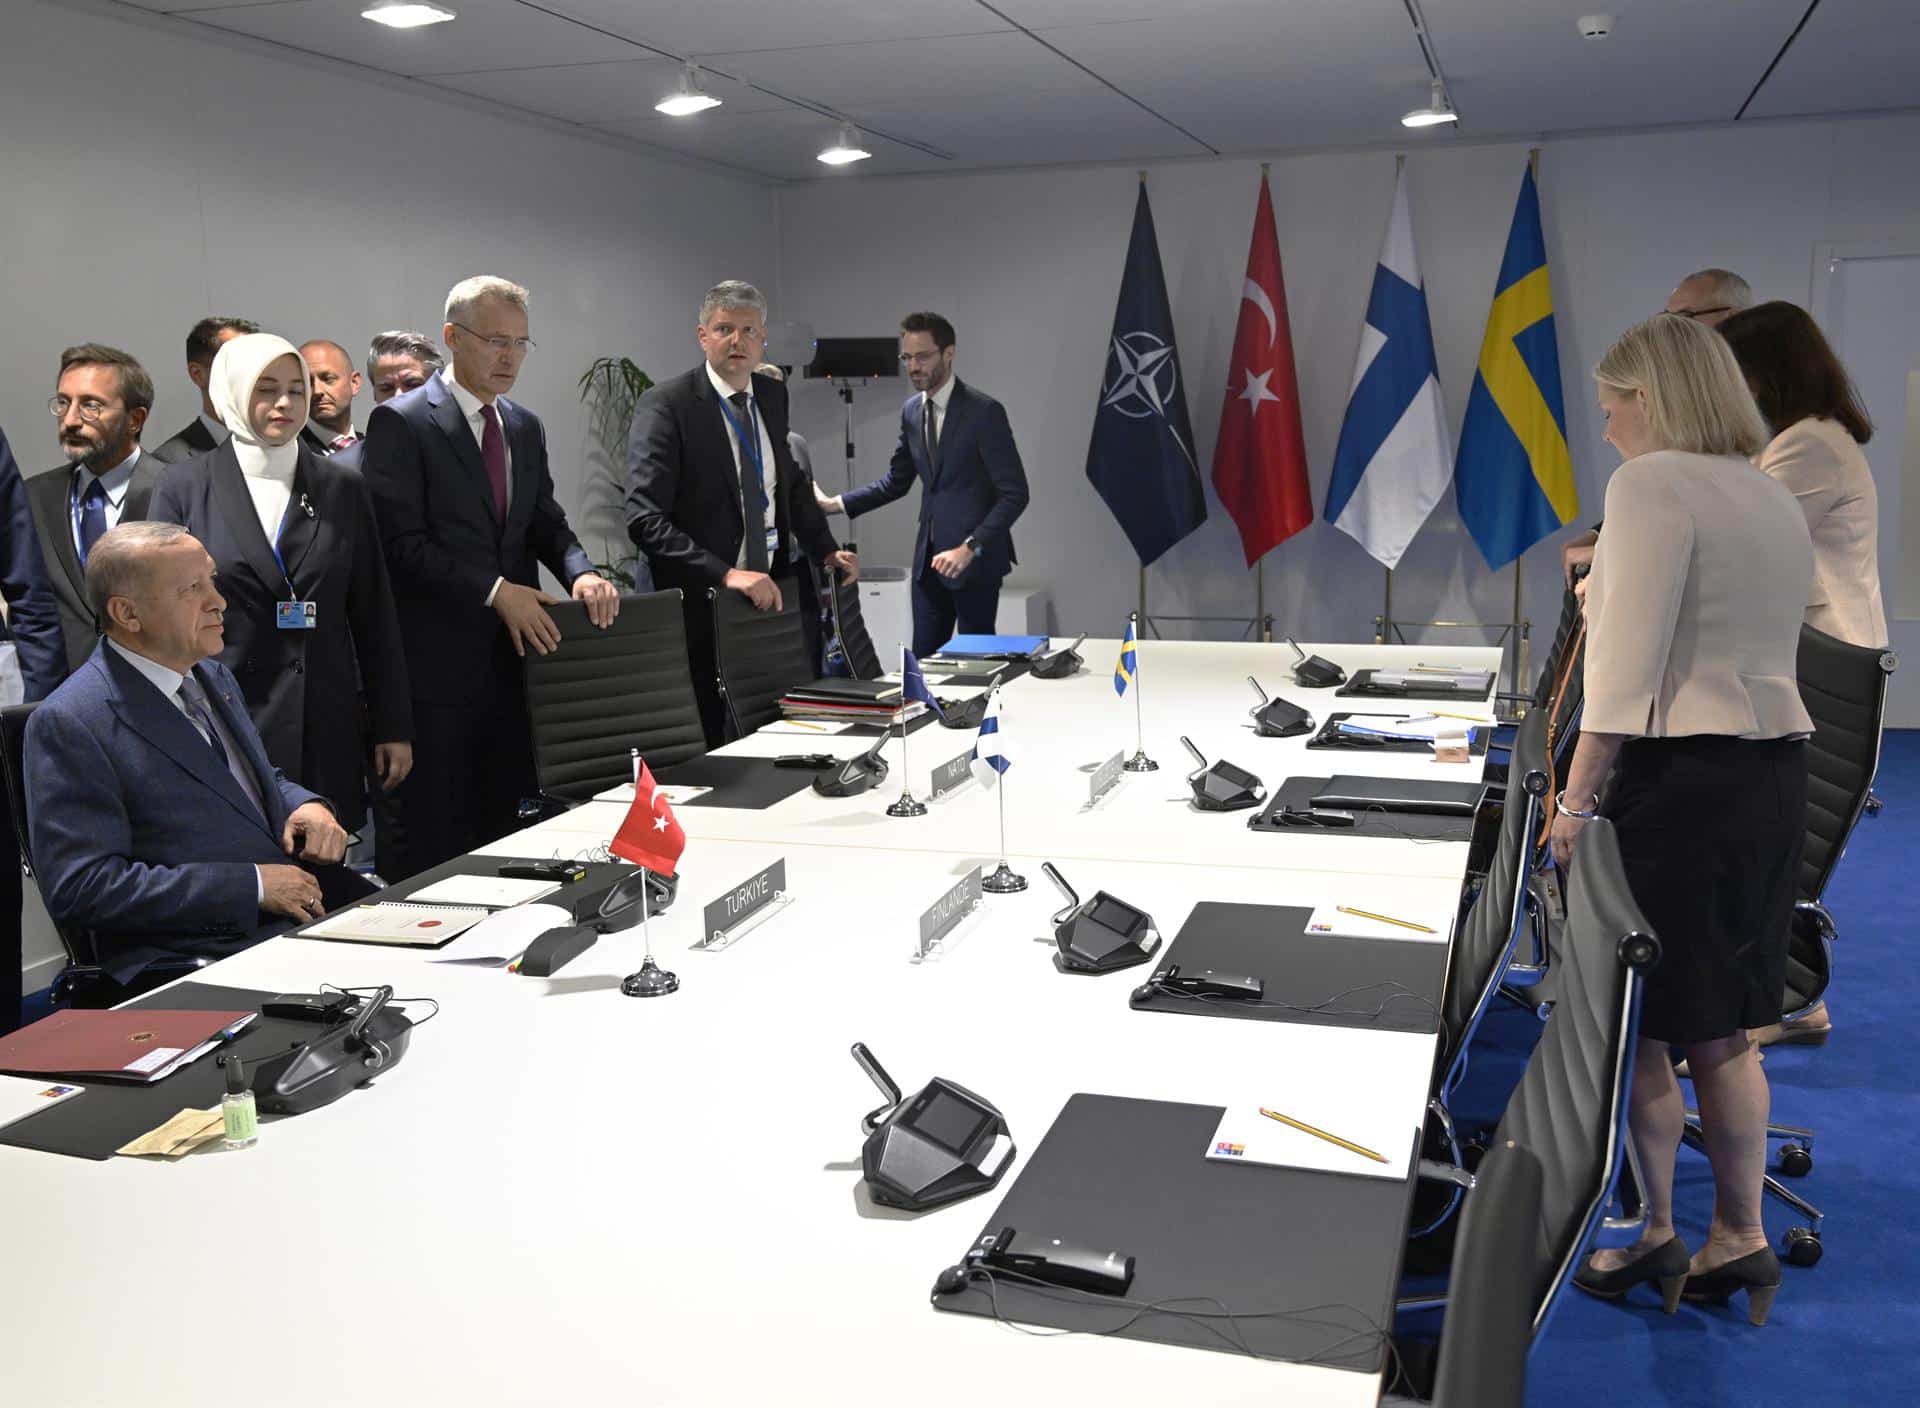 Reunión entre las delegaciones de Turquía, Suecia y Finlandia en la cumbre de la OTAN.